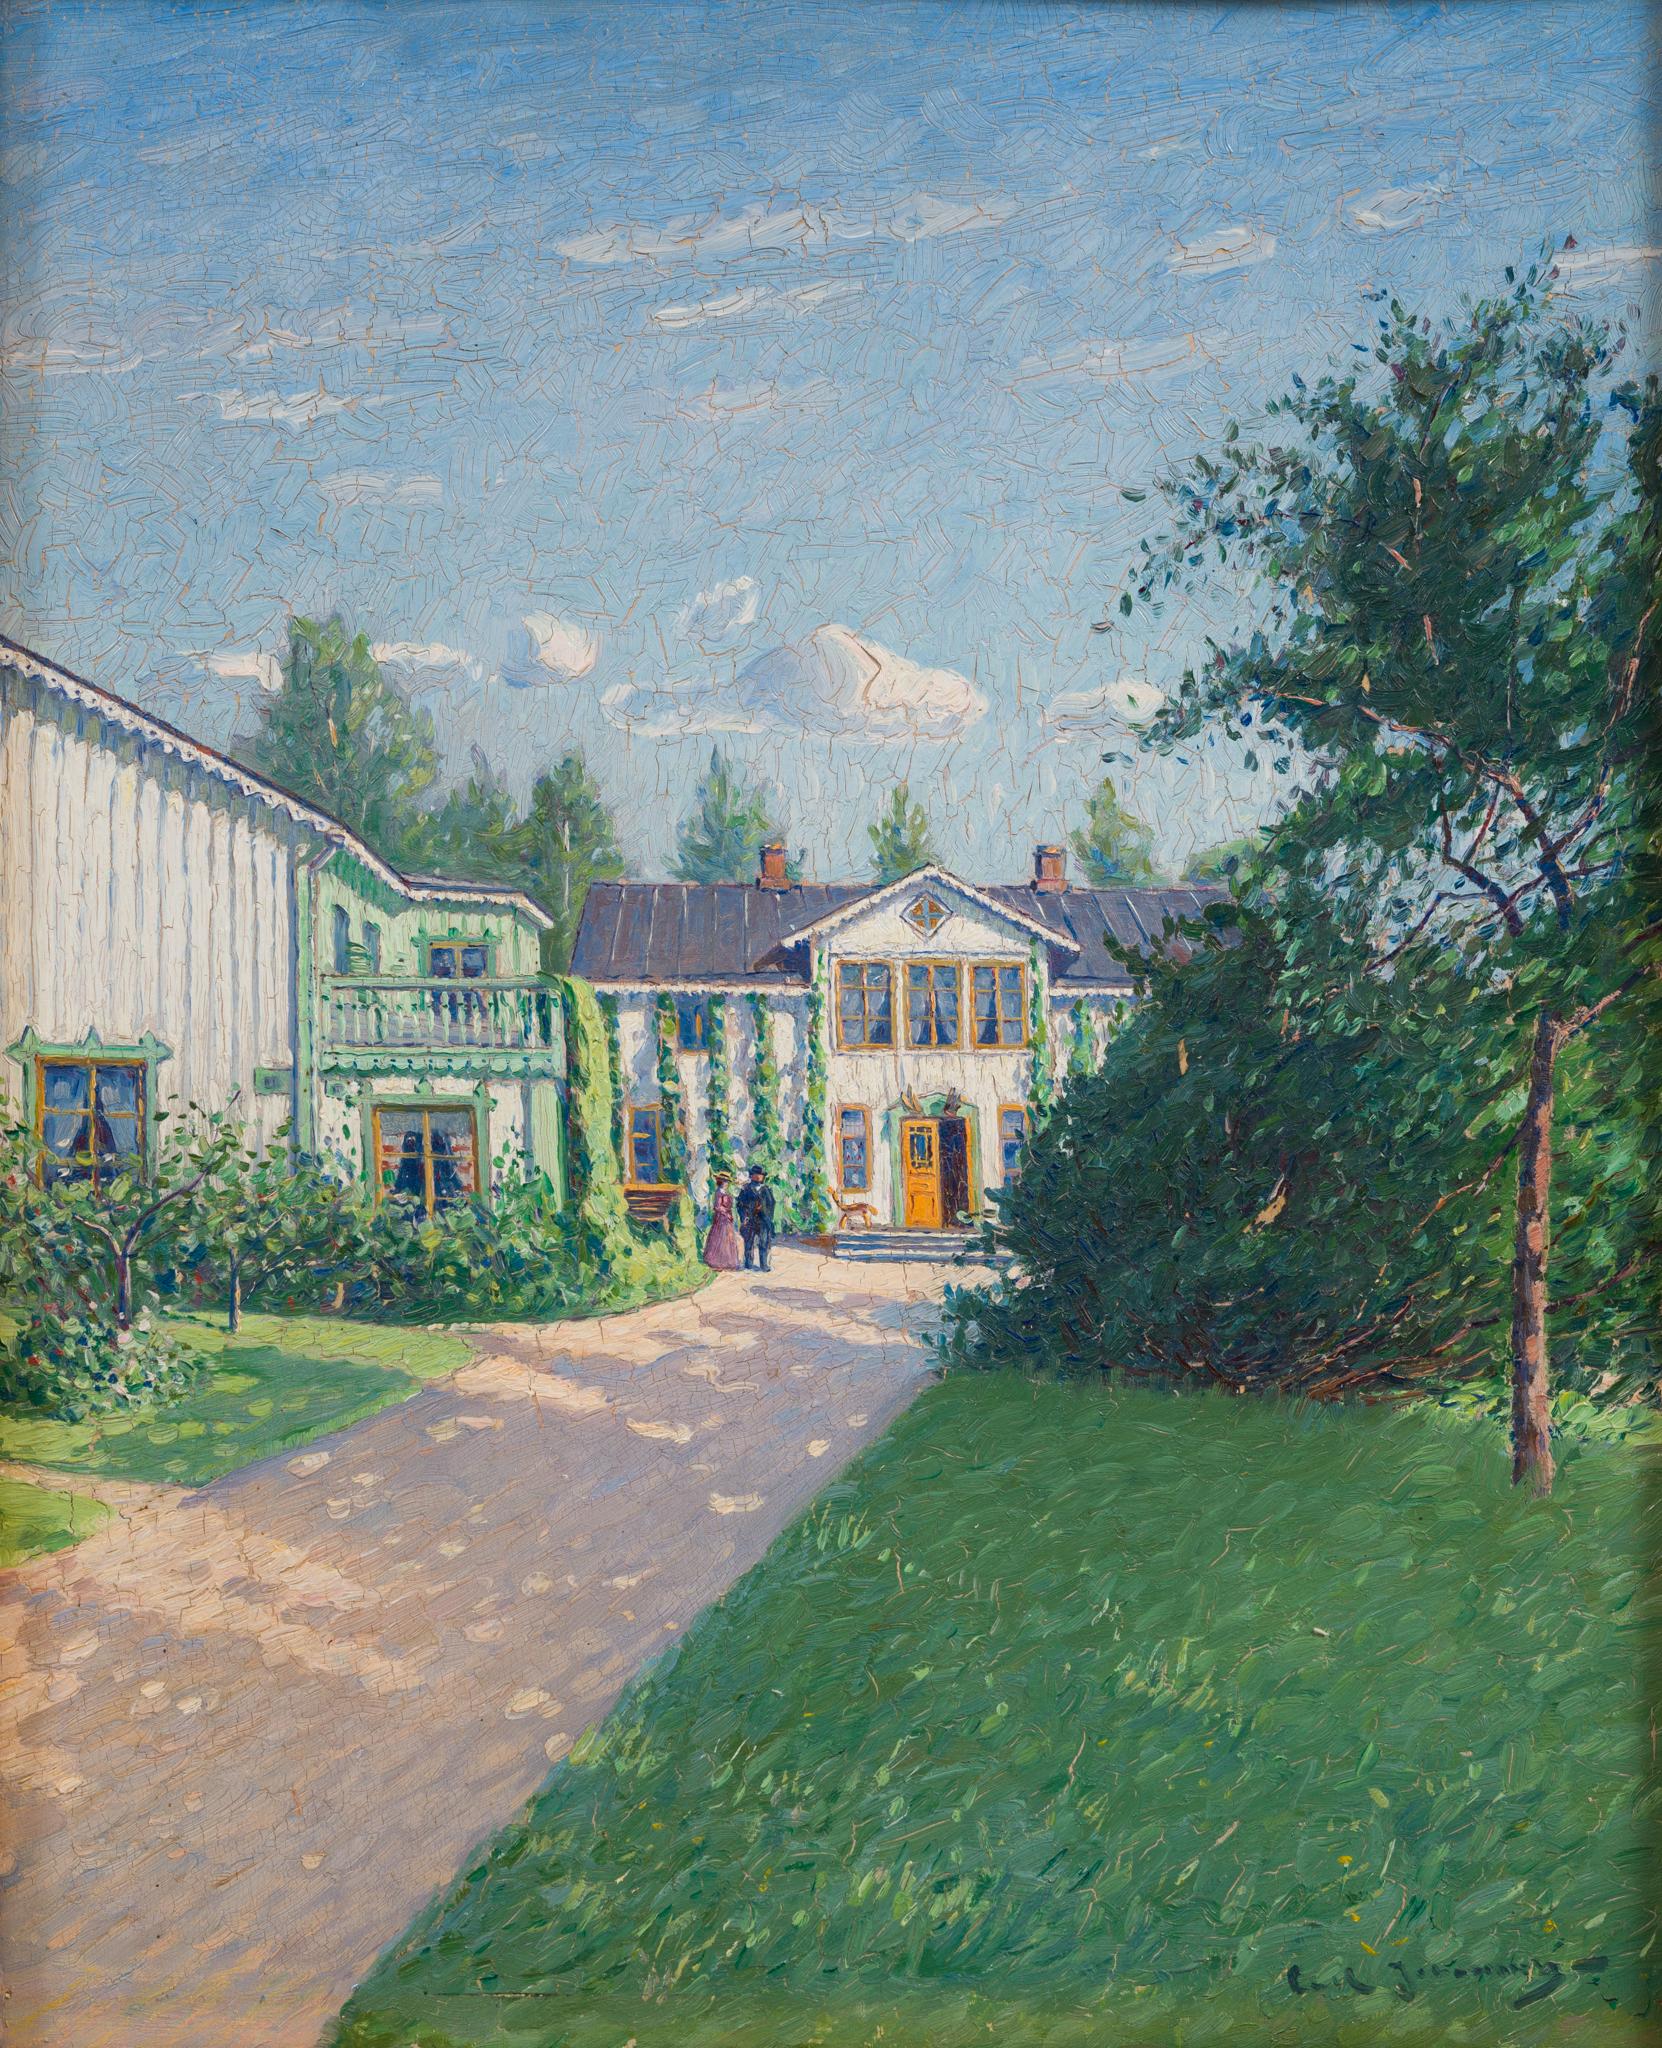 Courtyard with Elegantly Dressed Couple, peinture à l'huile originale - Painting de Carl Johansson 